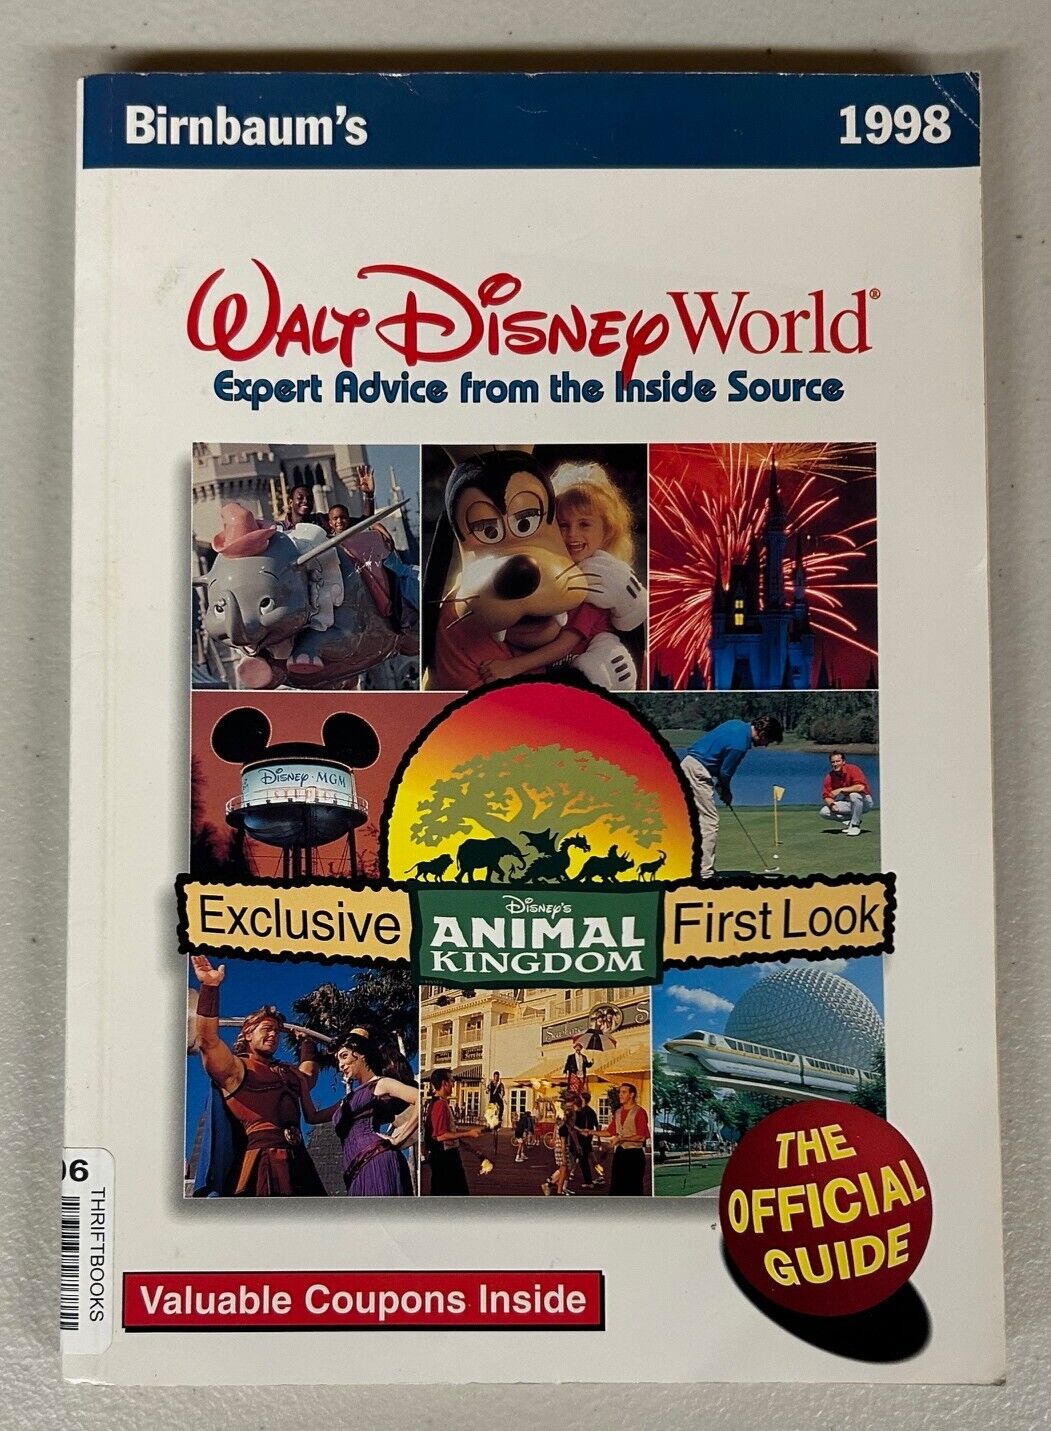 1998 Birnbaum's Official Walt Disney World Guide